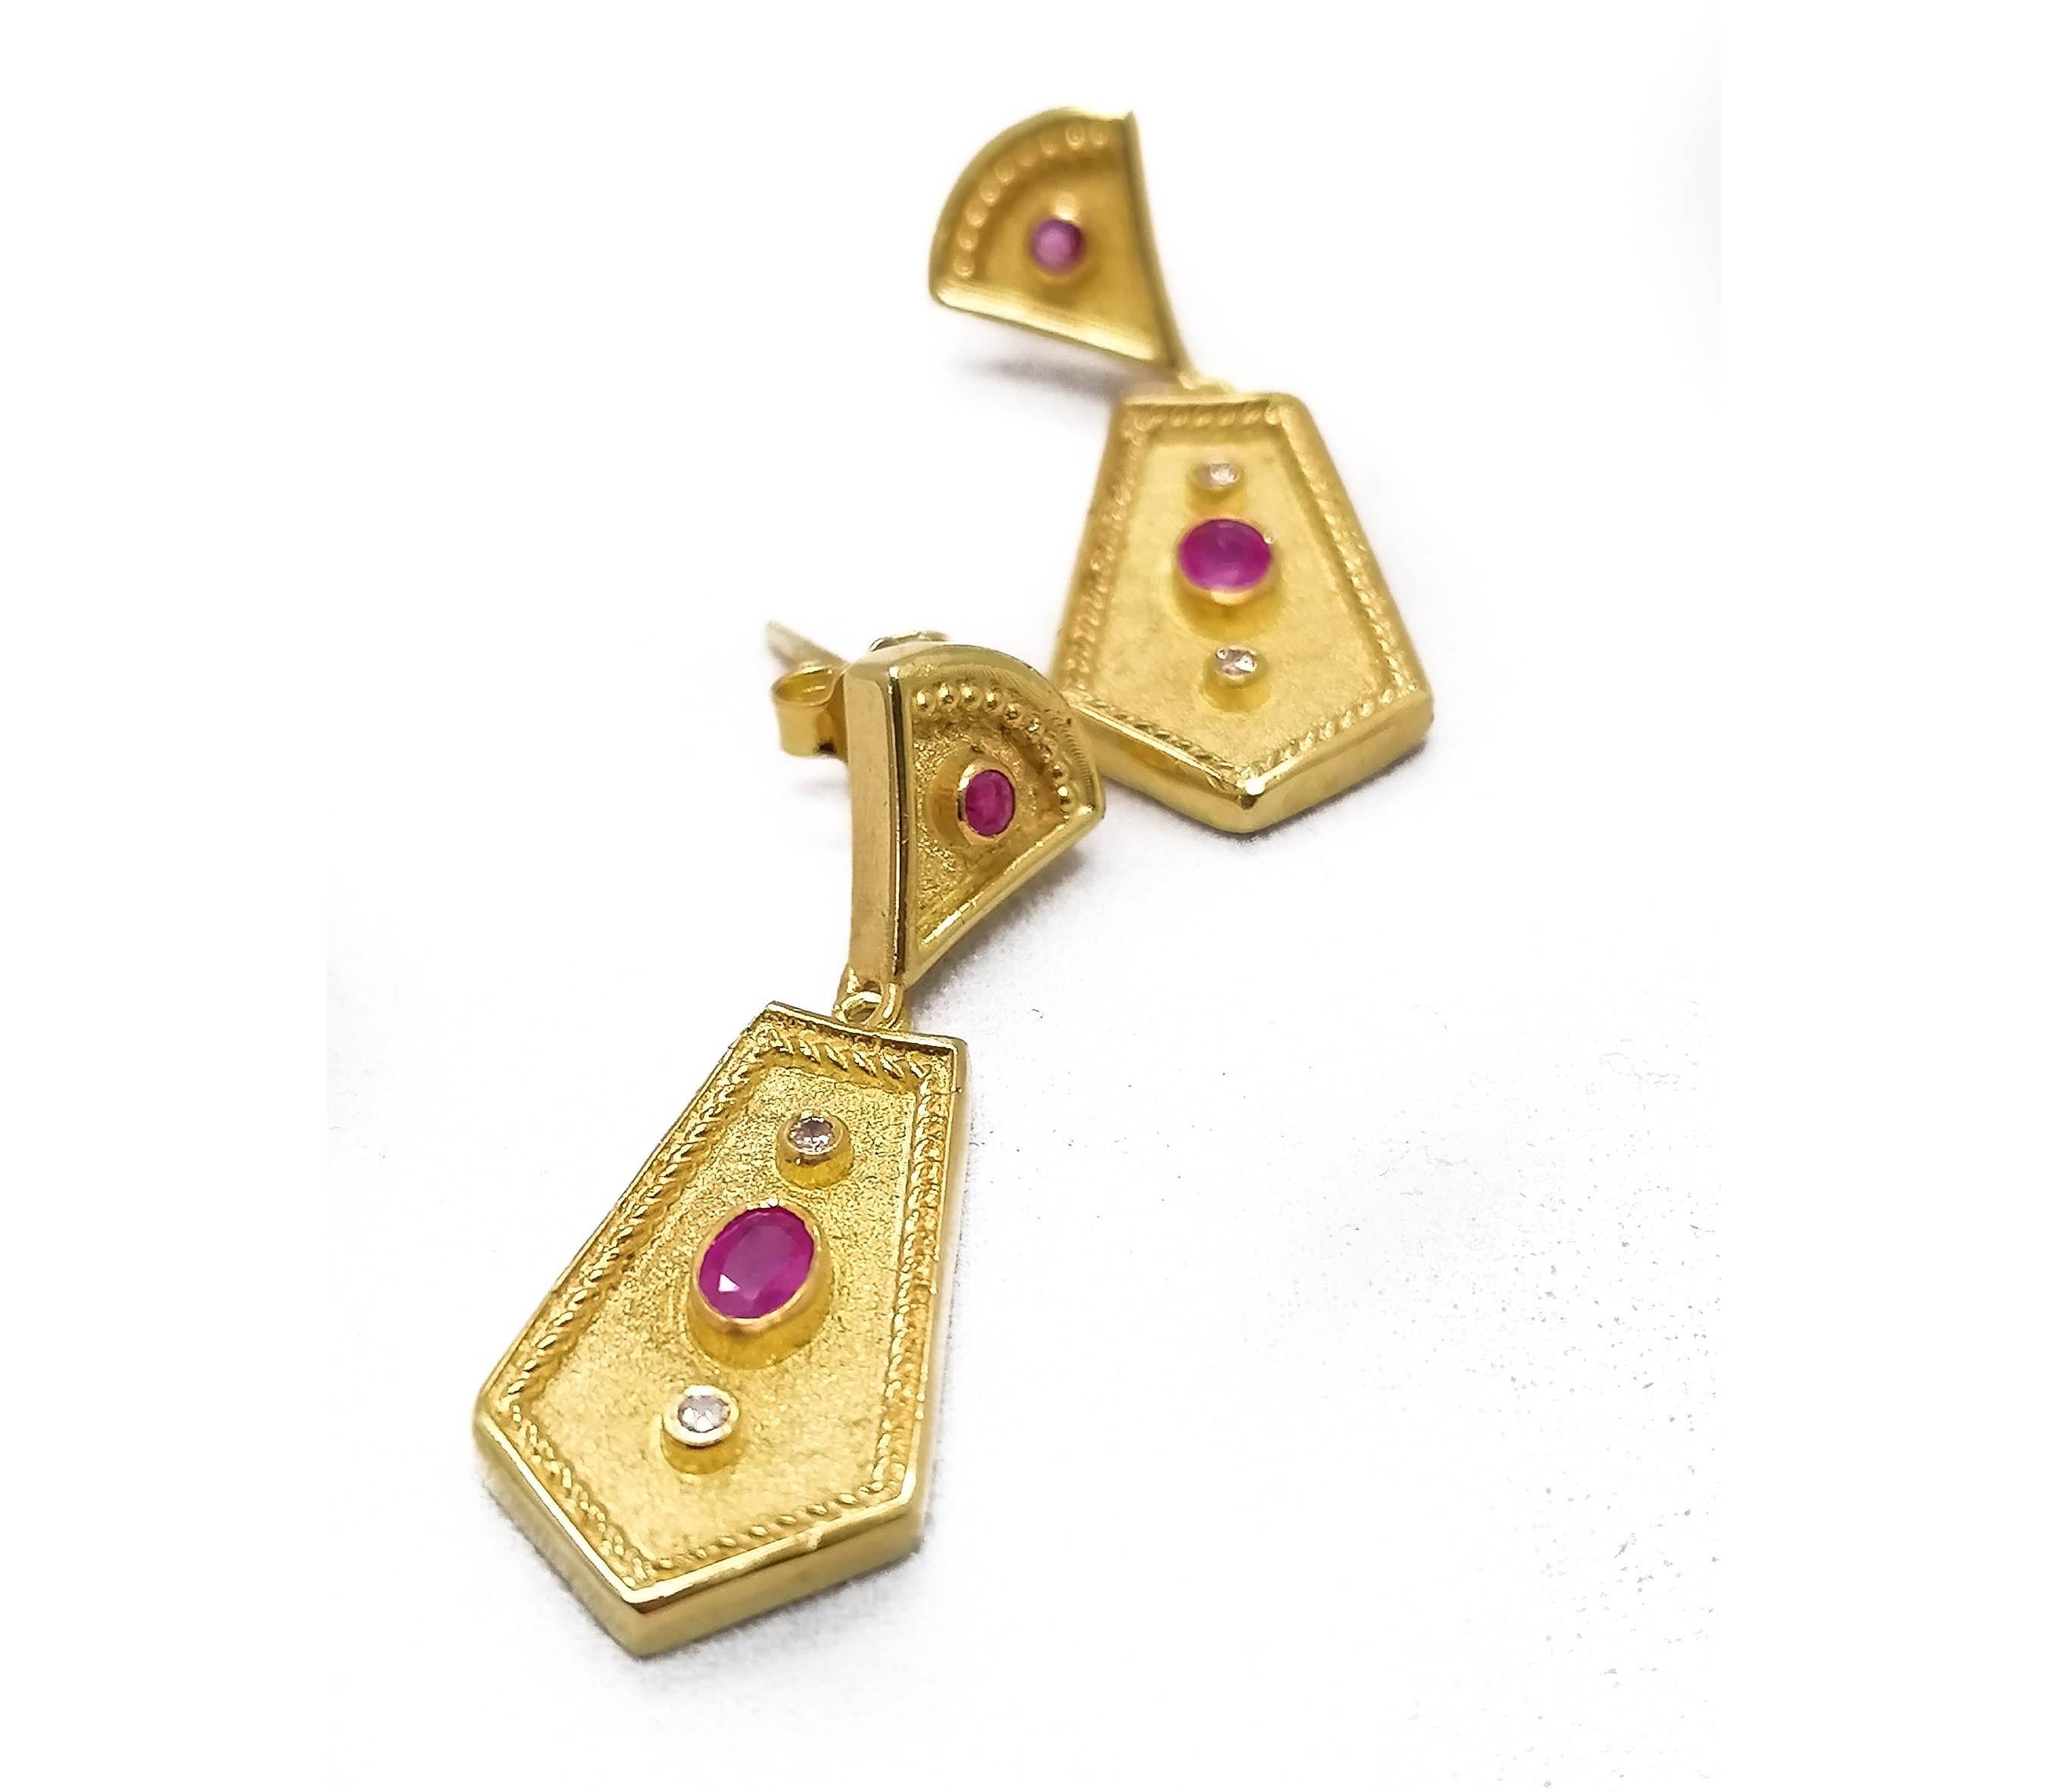 Diese wunderschönen Designer-Ohrringe im etruskischen Stil von S.Georgios sind aus 18 Karat Gelbgold handgefertigt und mit einer unter dem Mikroskop ausgeführten Granulation verziert. Diese wunderschönen Ohrringe bestehen aus 4 natürlichen Rubinen,